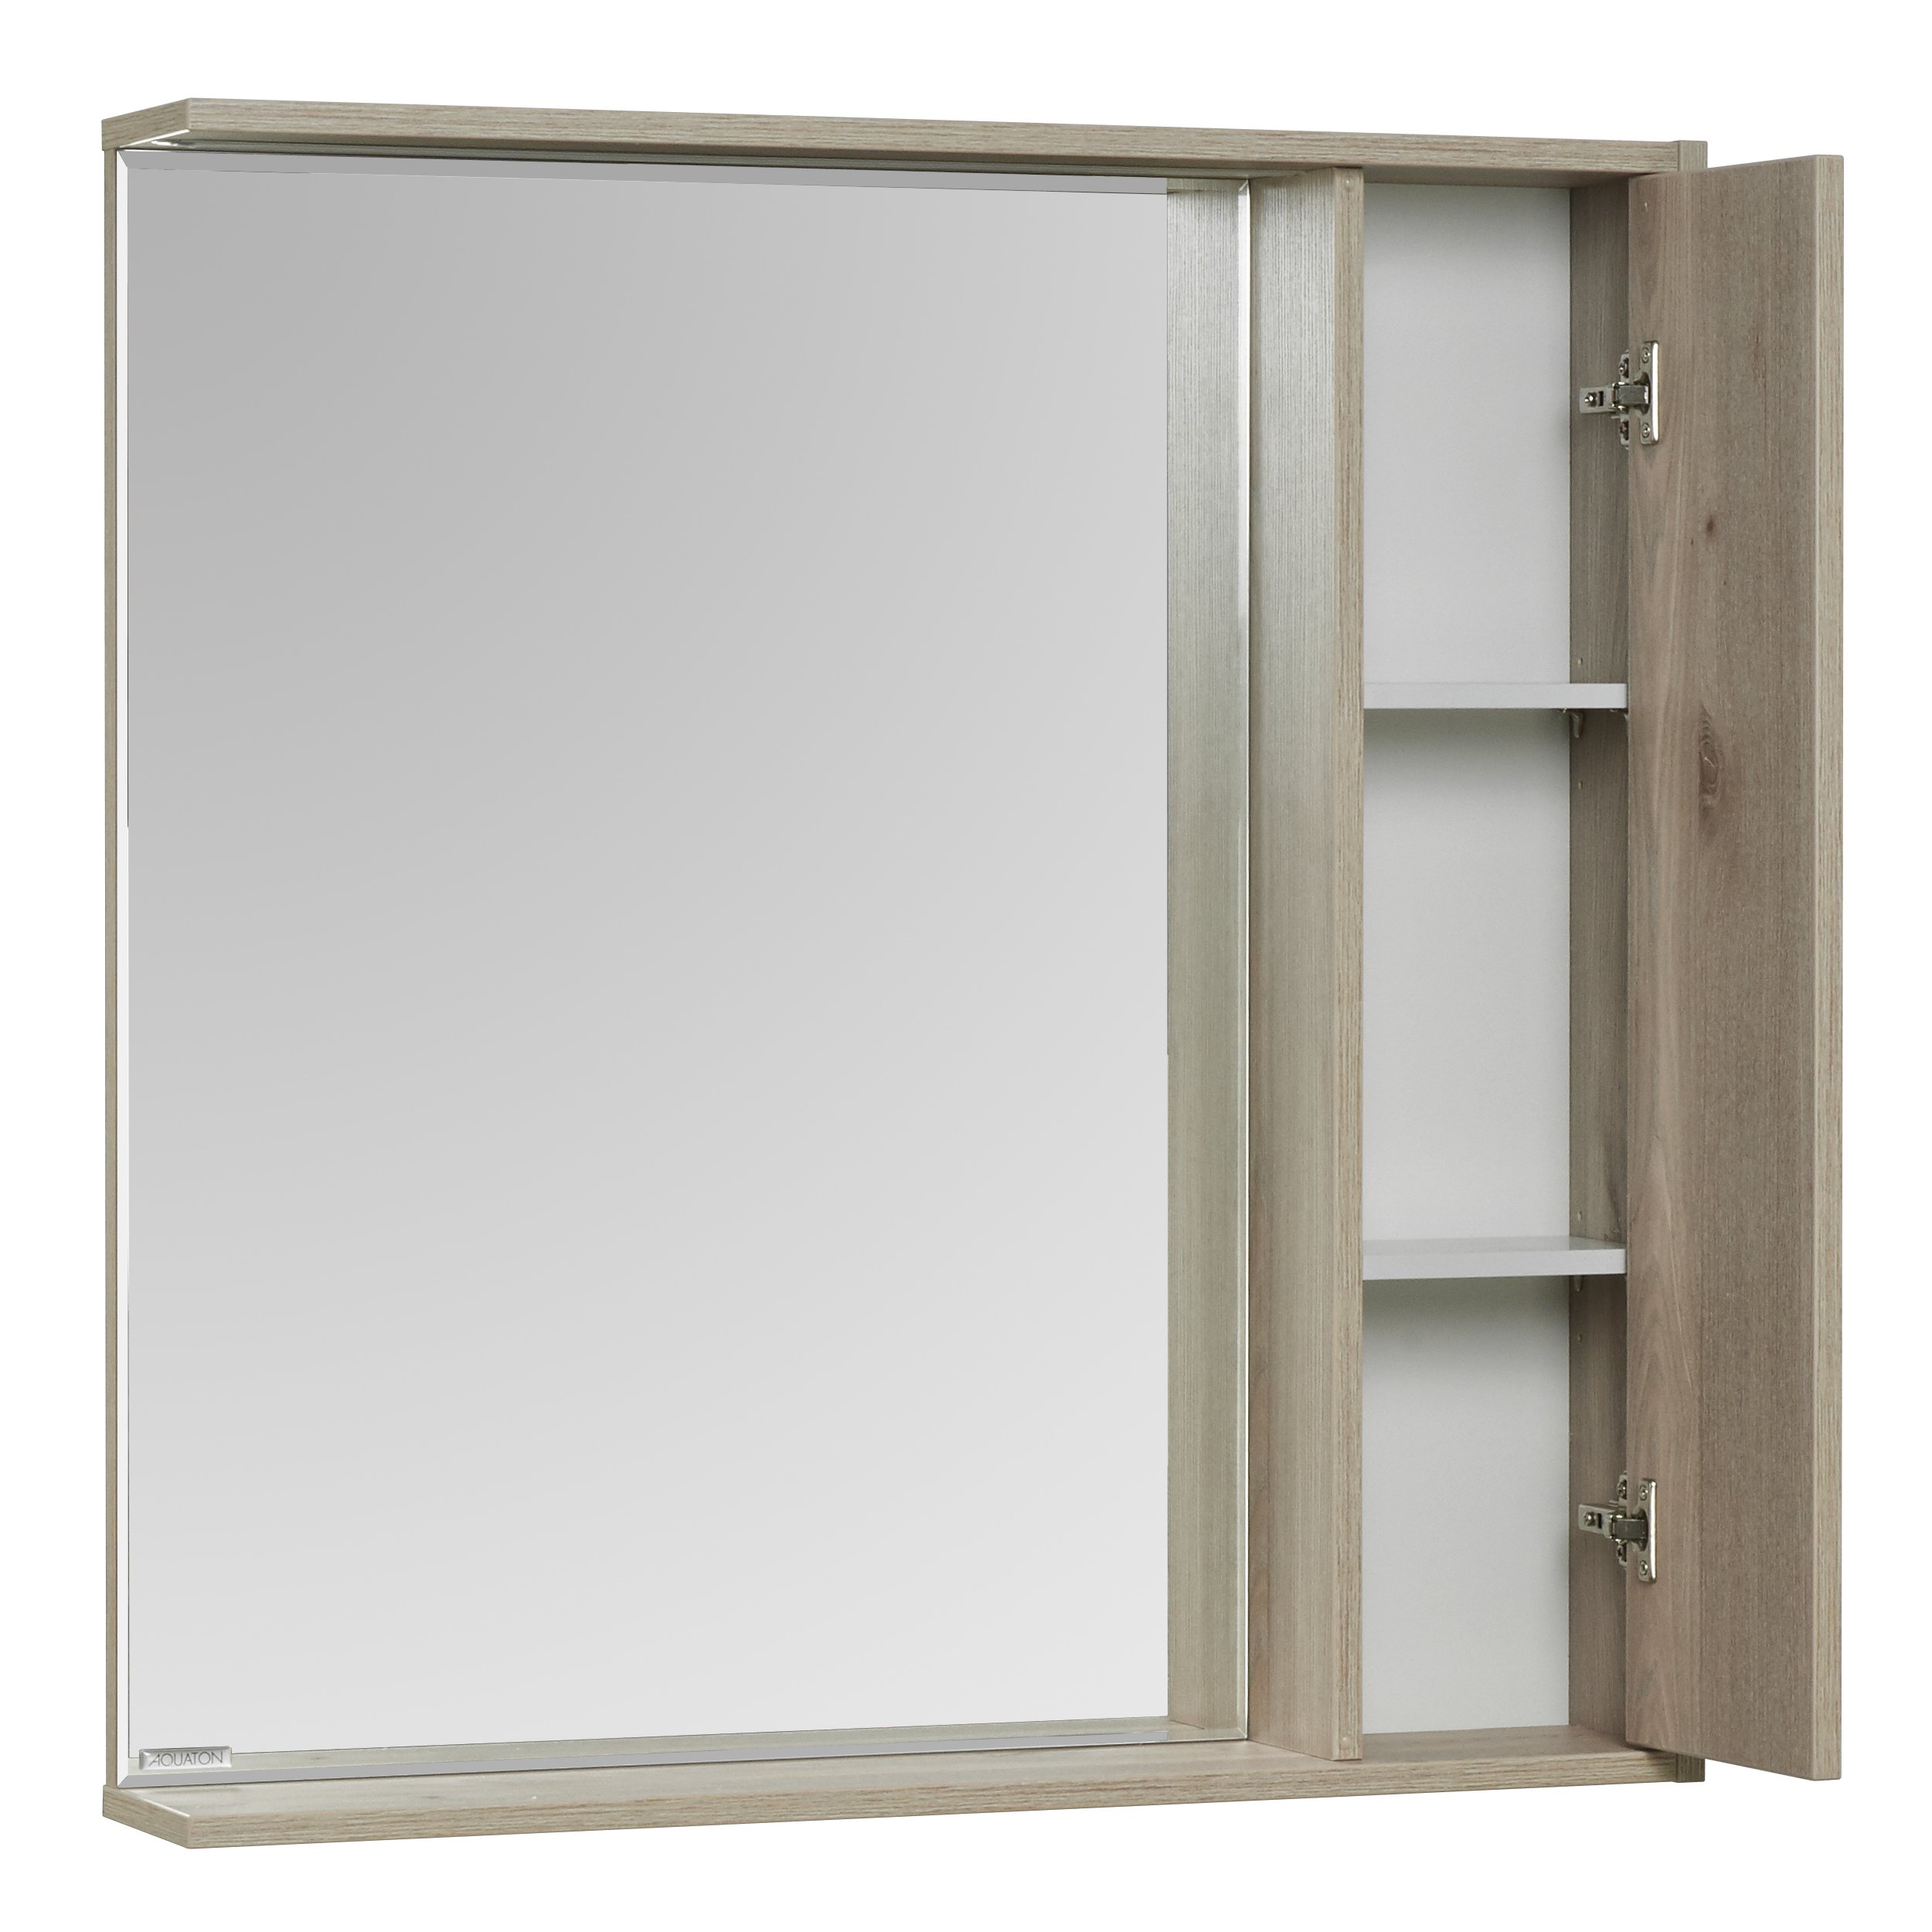 Зеркальный шкаф Aquaton Стоун 1A228302SX850 80 x 83.3 см, с подсветкой, сосна арлингтон